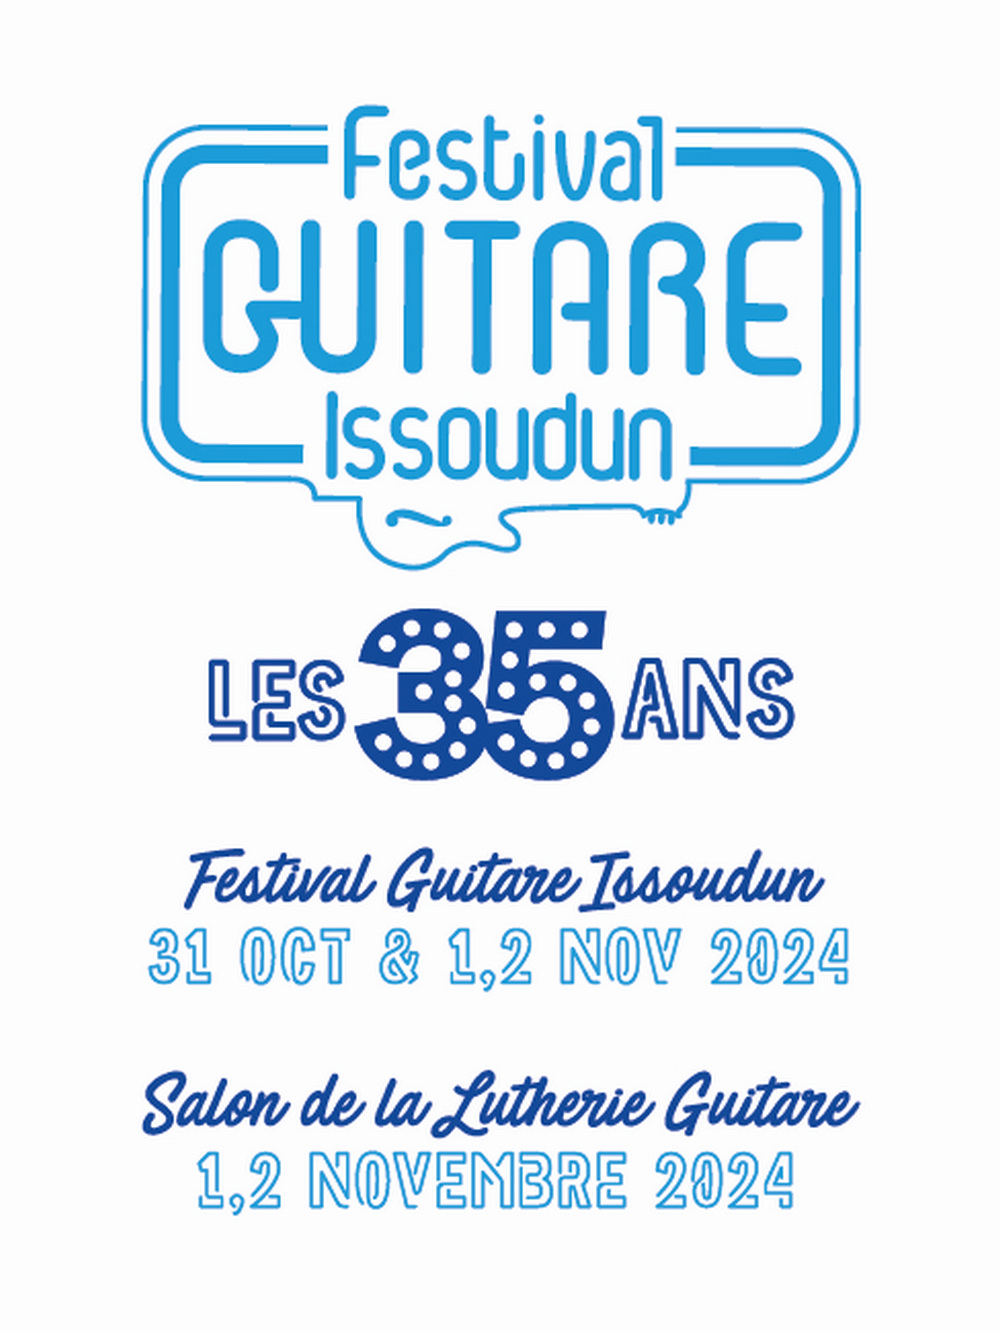 Festival Guitare Issoudun 2024